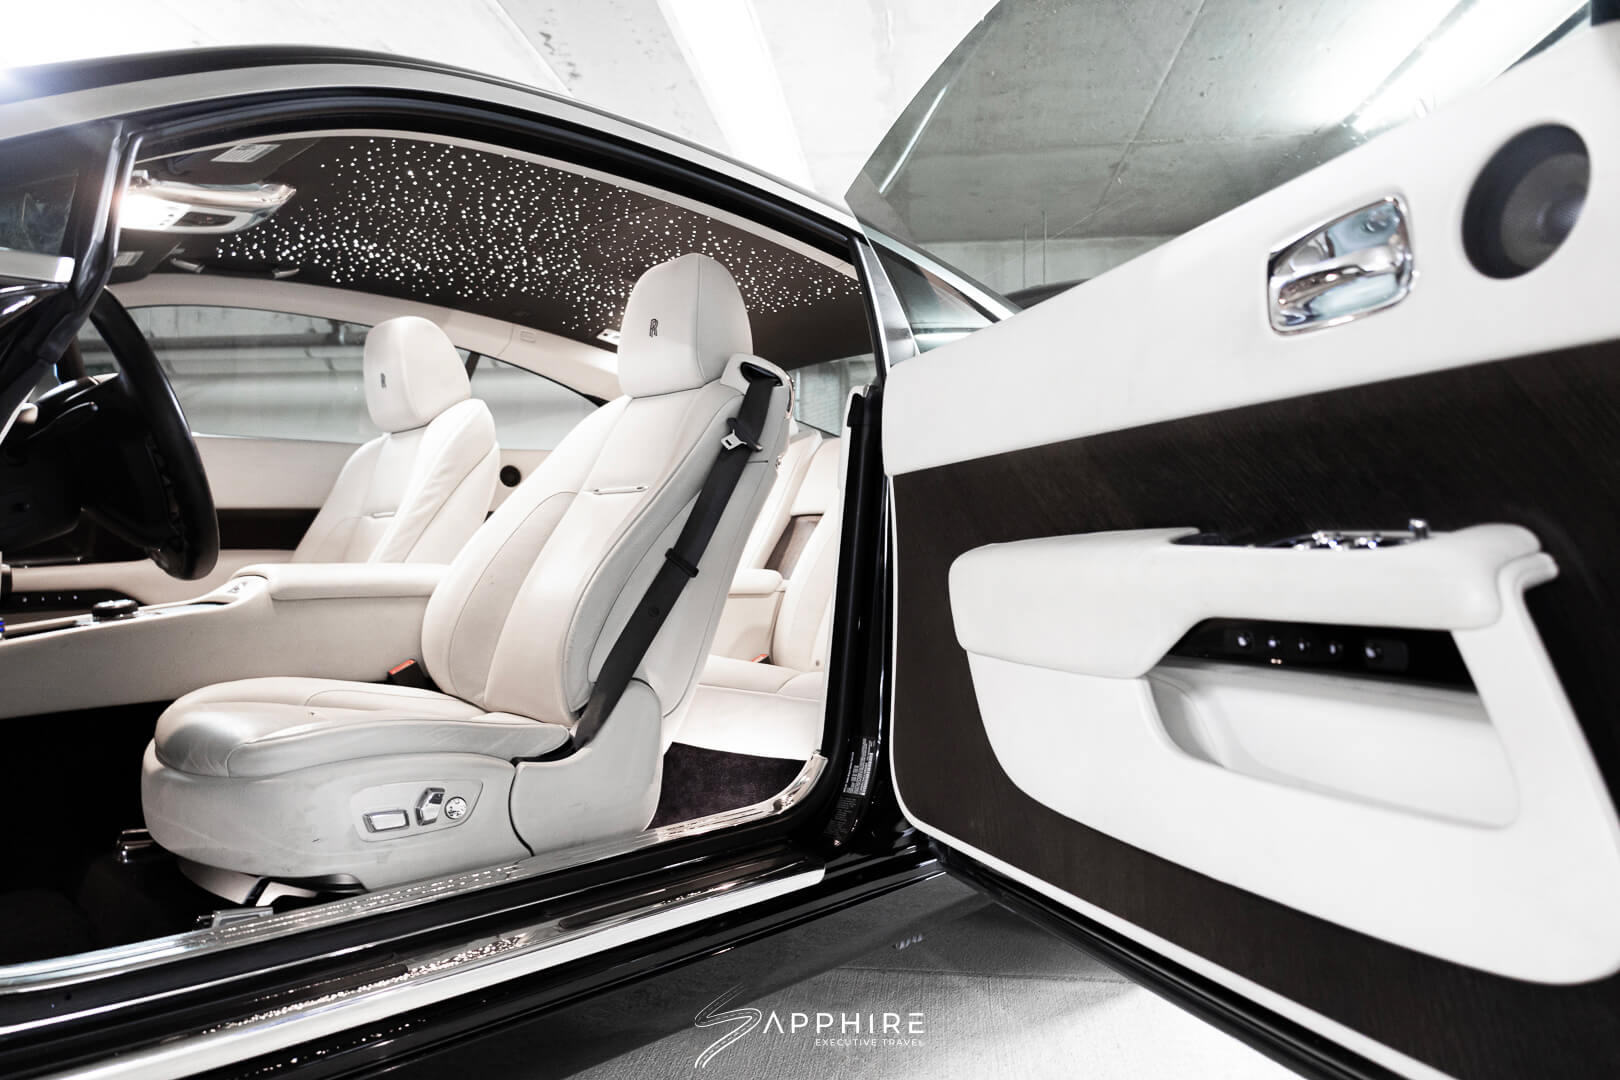 Interior of a Rolls Royce Wraith